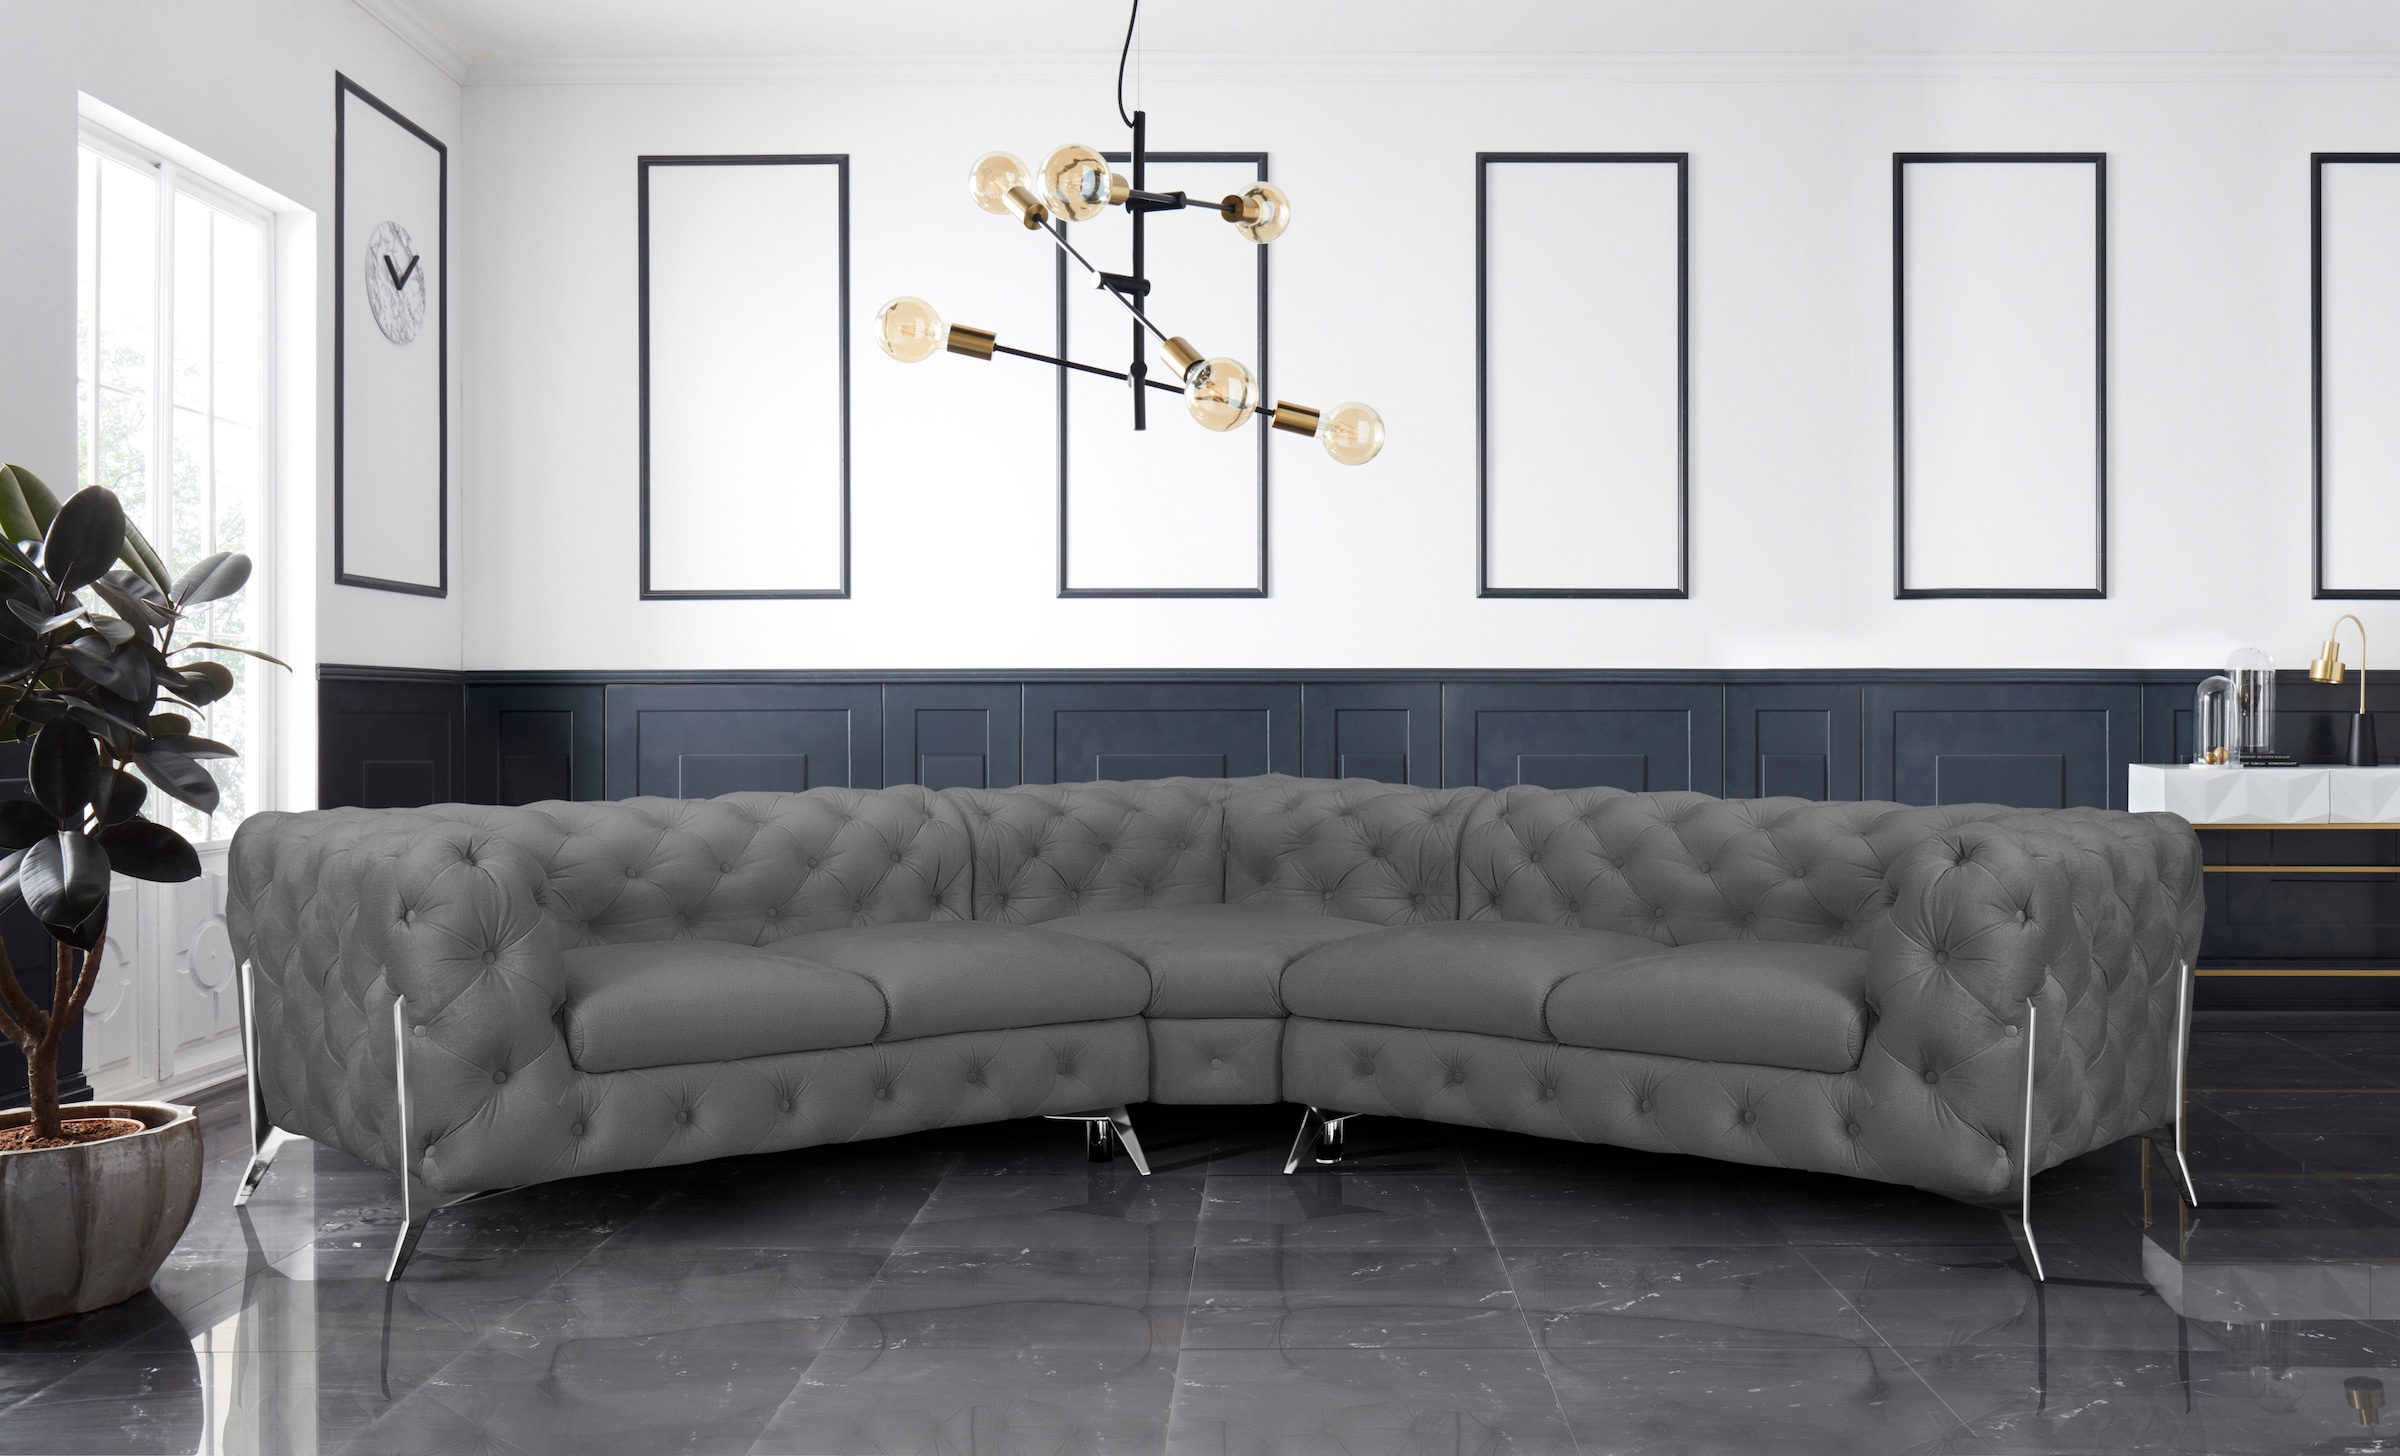 Leonique Chesterfield-Sofa »Amaury L-Form«, Chesterfield-Optik, Breite/Tiefe je 262 cm, Fußfarbe wählbar